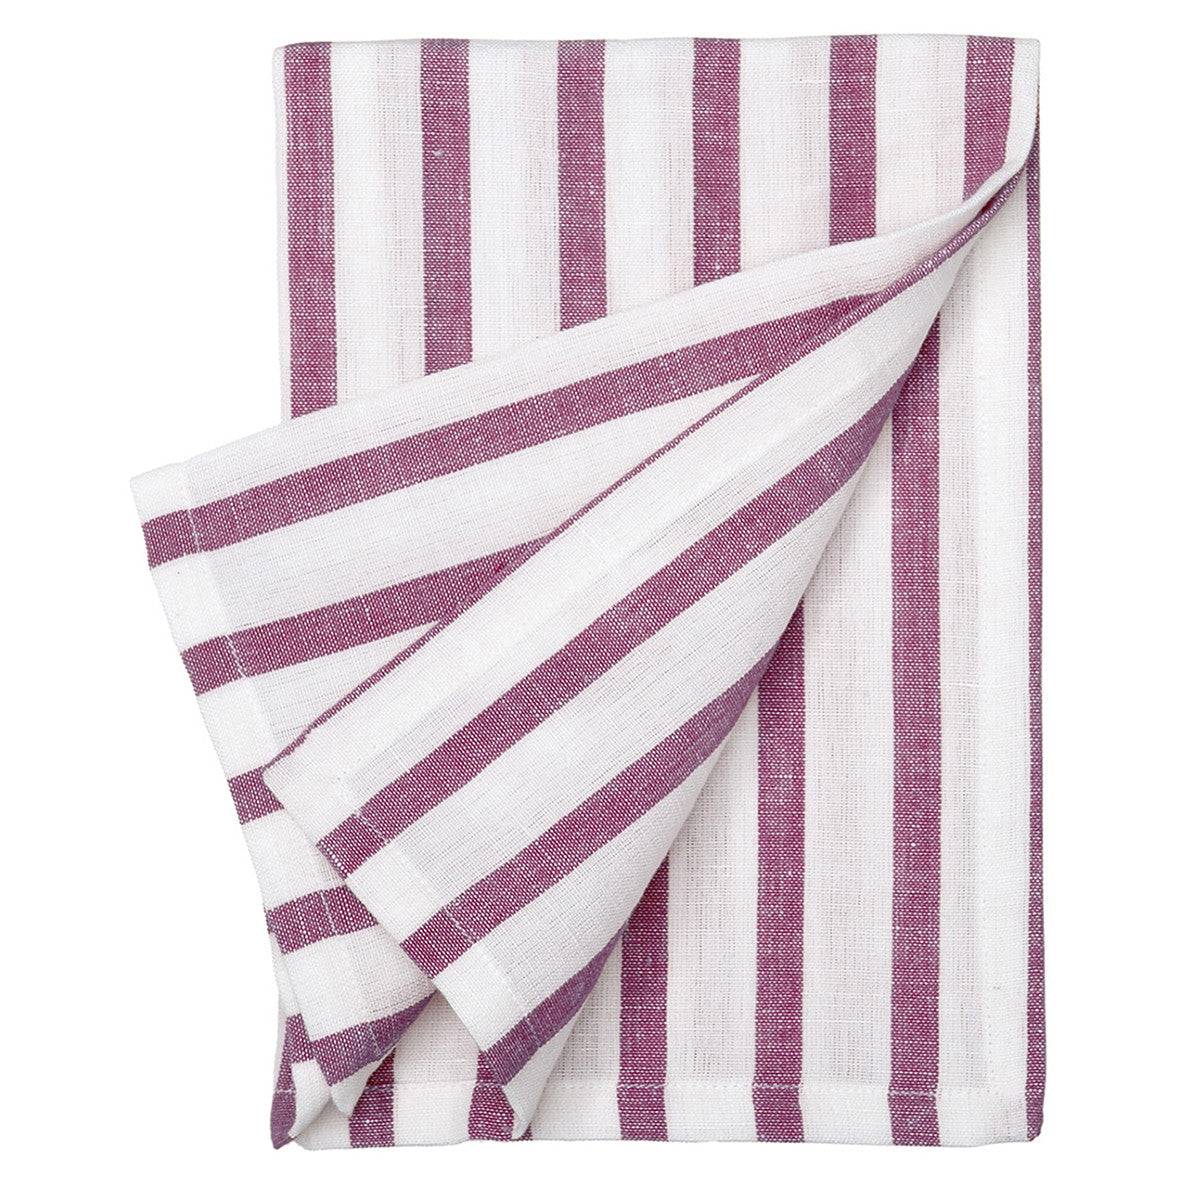 Autumn Ticking Stripe Cotton Linen Napkin - Dark Heather Pink